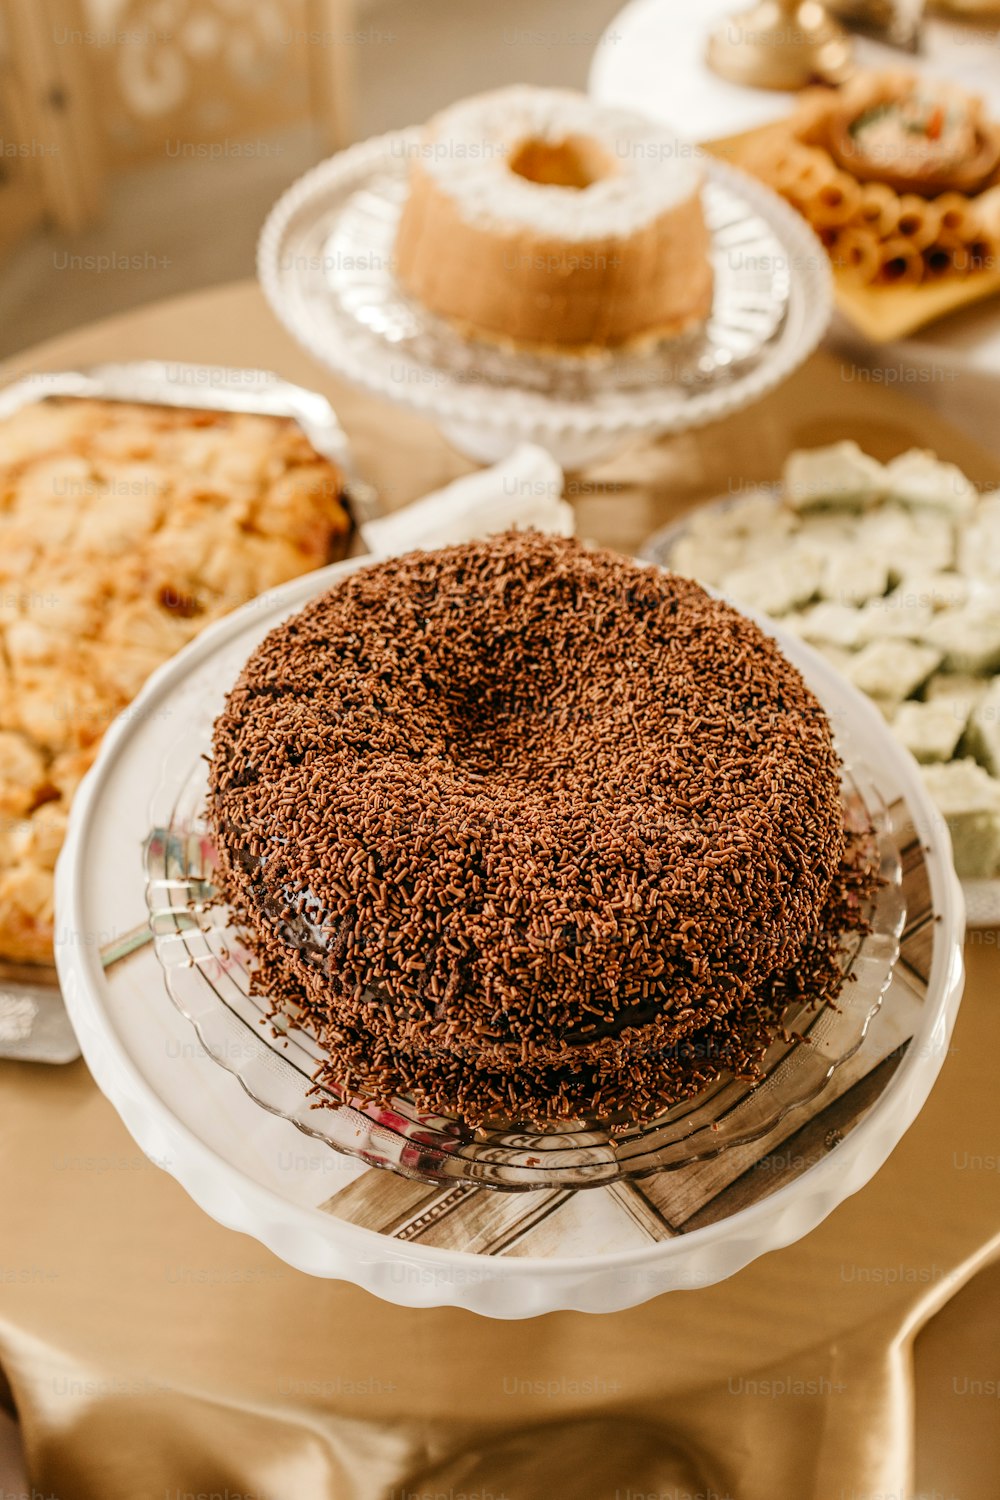 une table surmontée d’un gâteau recouvert de glaçage au chocolat